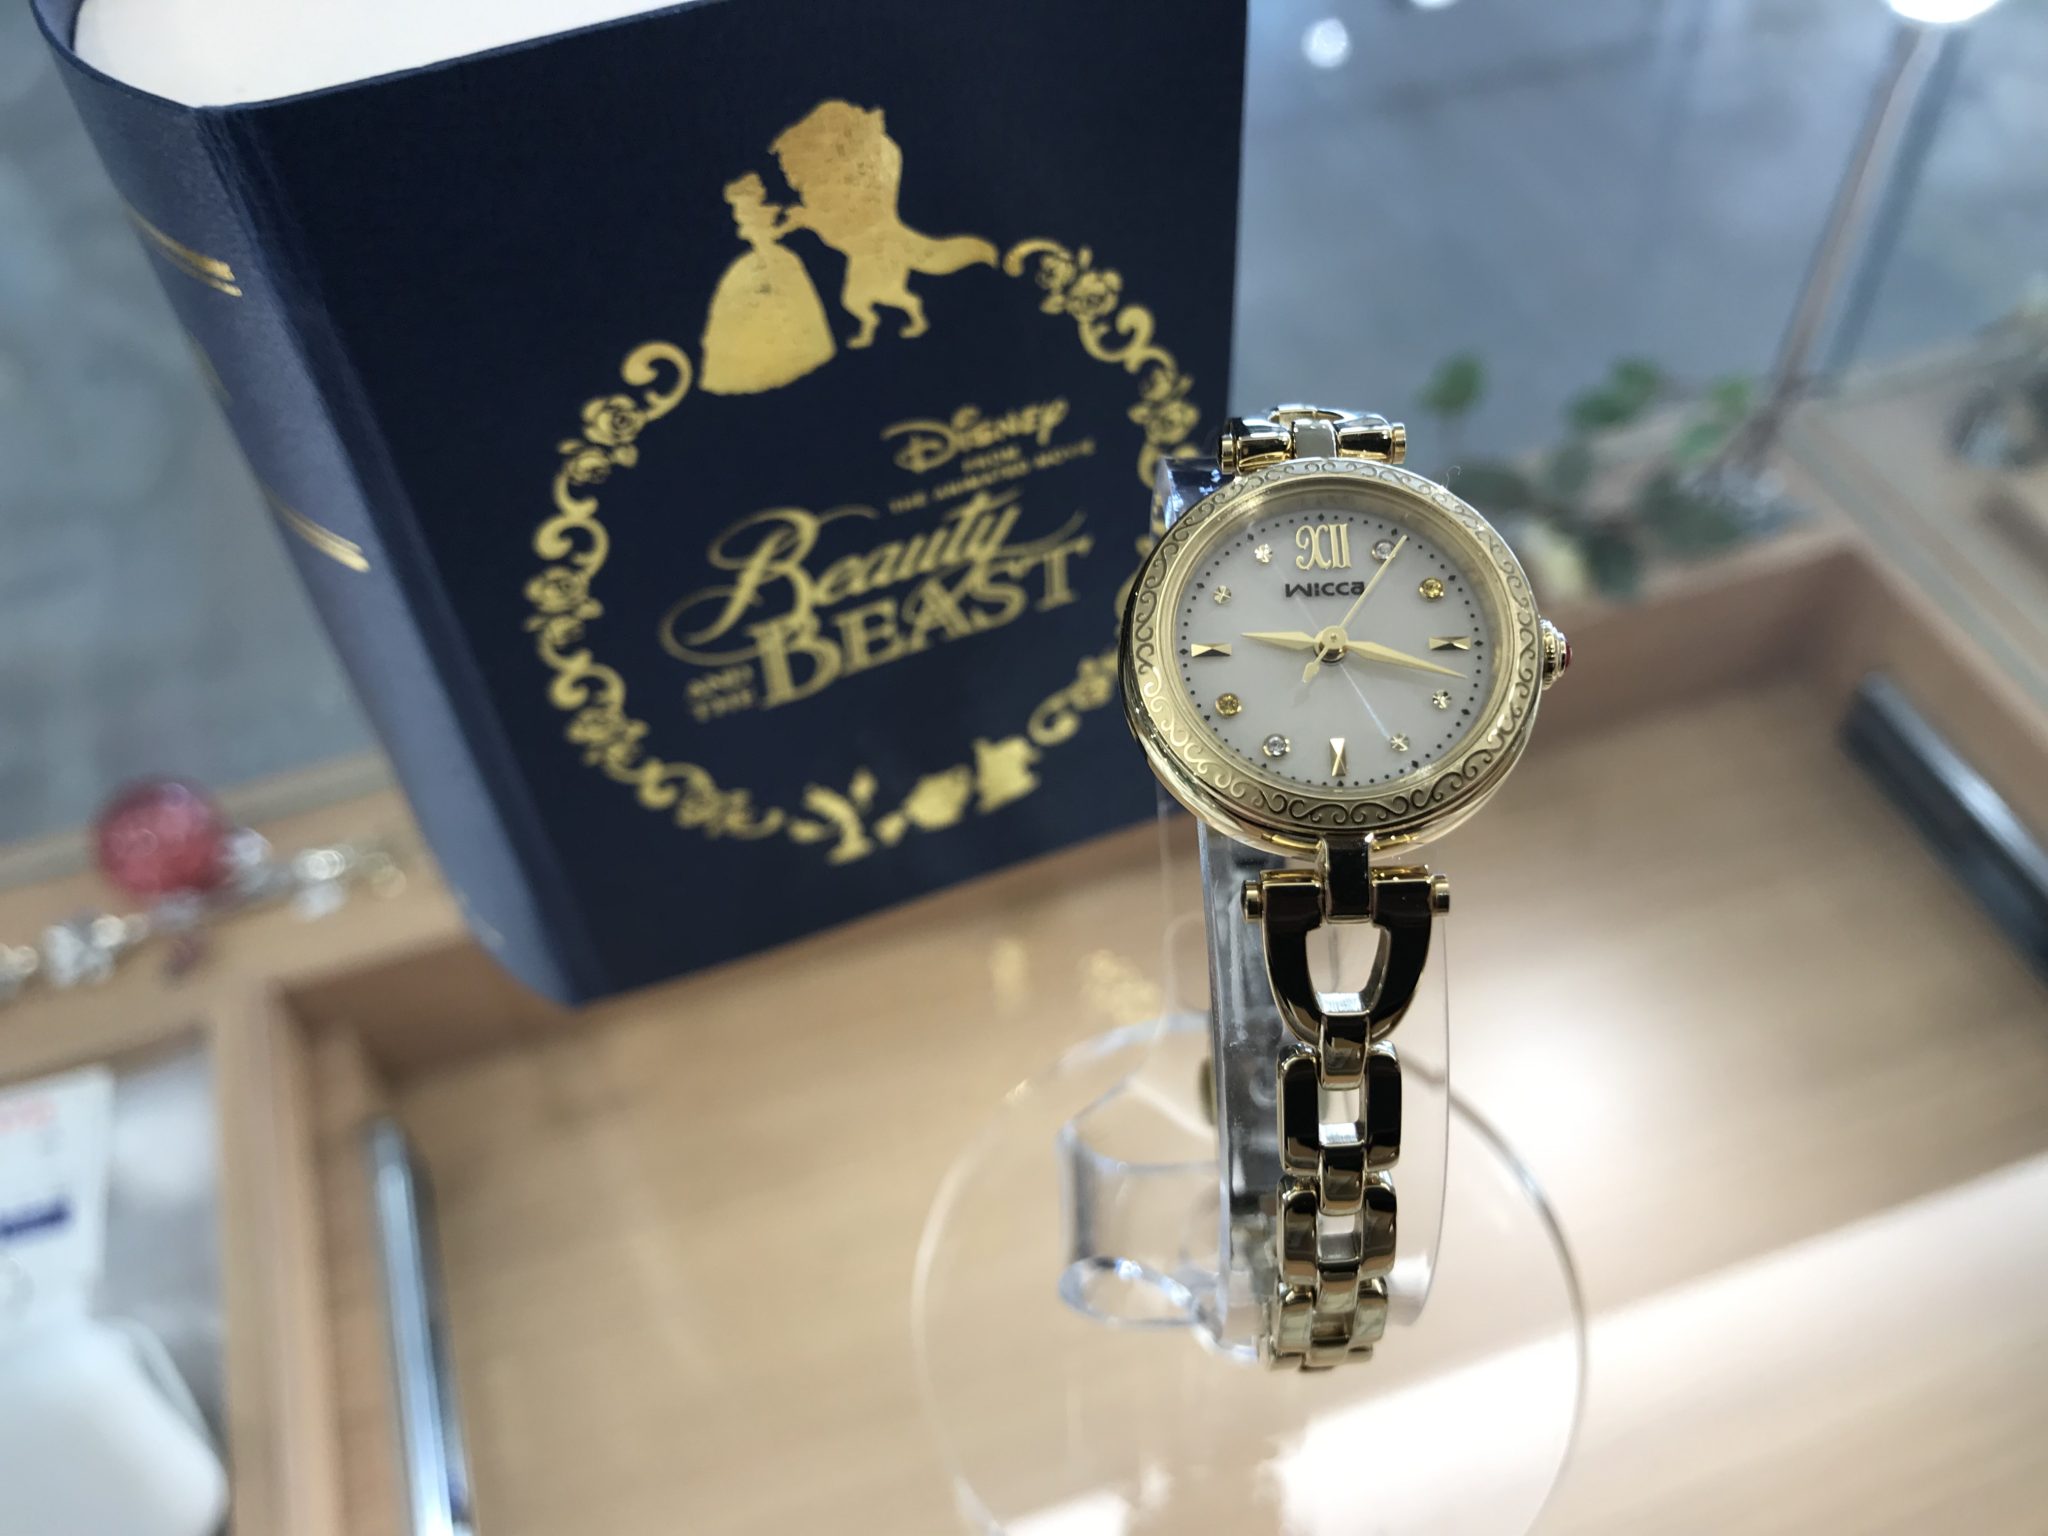 15,050円シチズン wicca 美女と野獣 腕時計 限定モデル